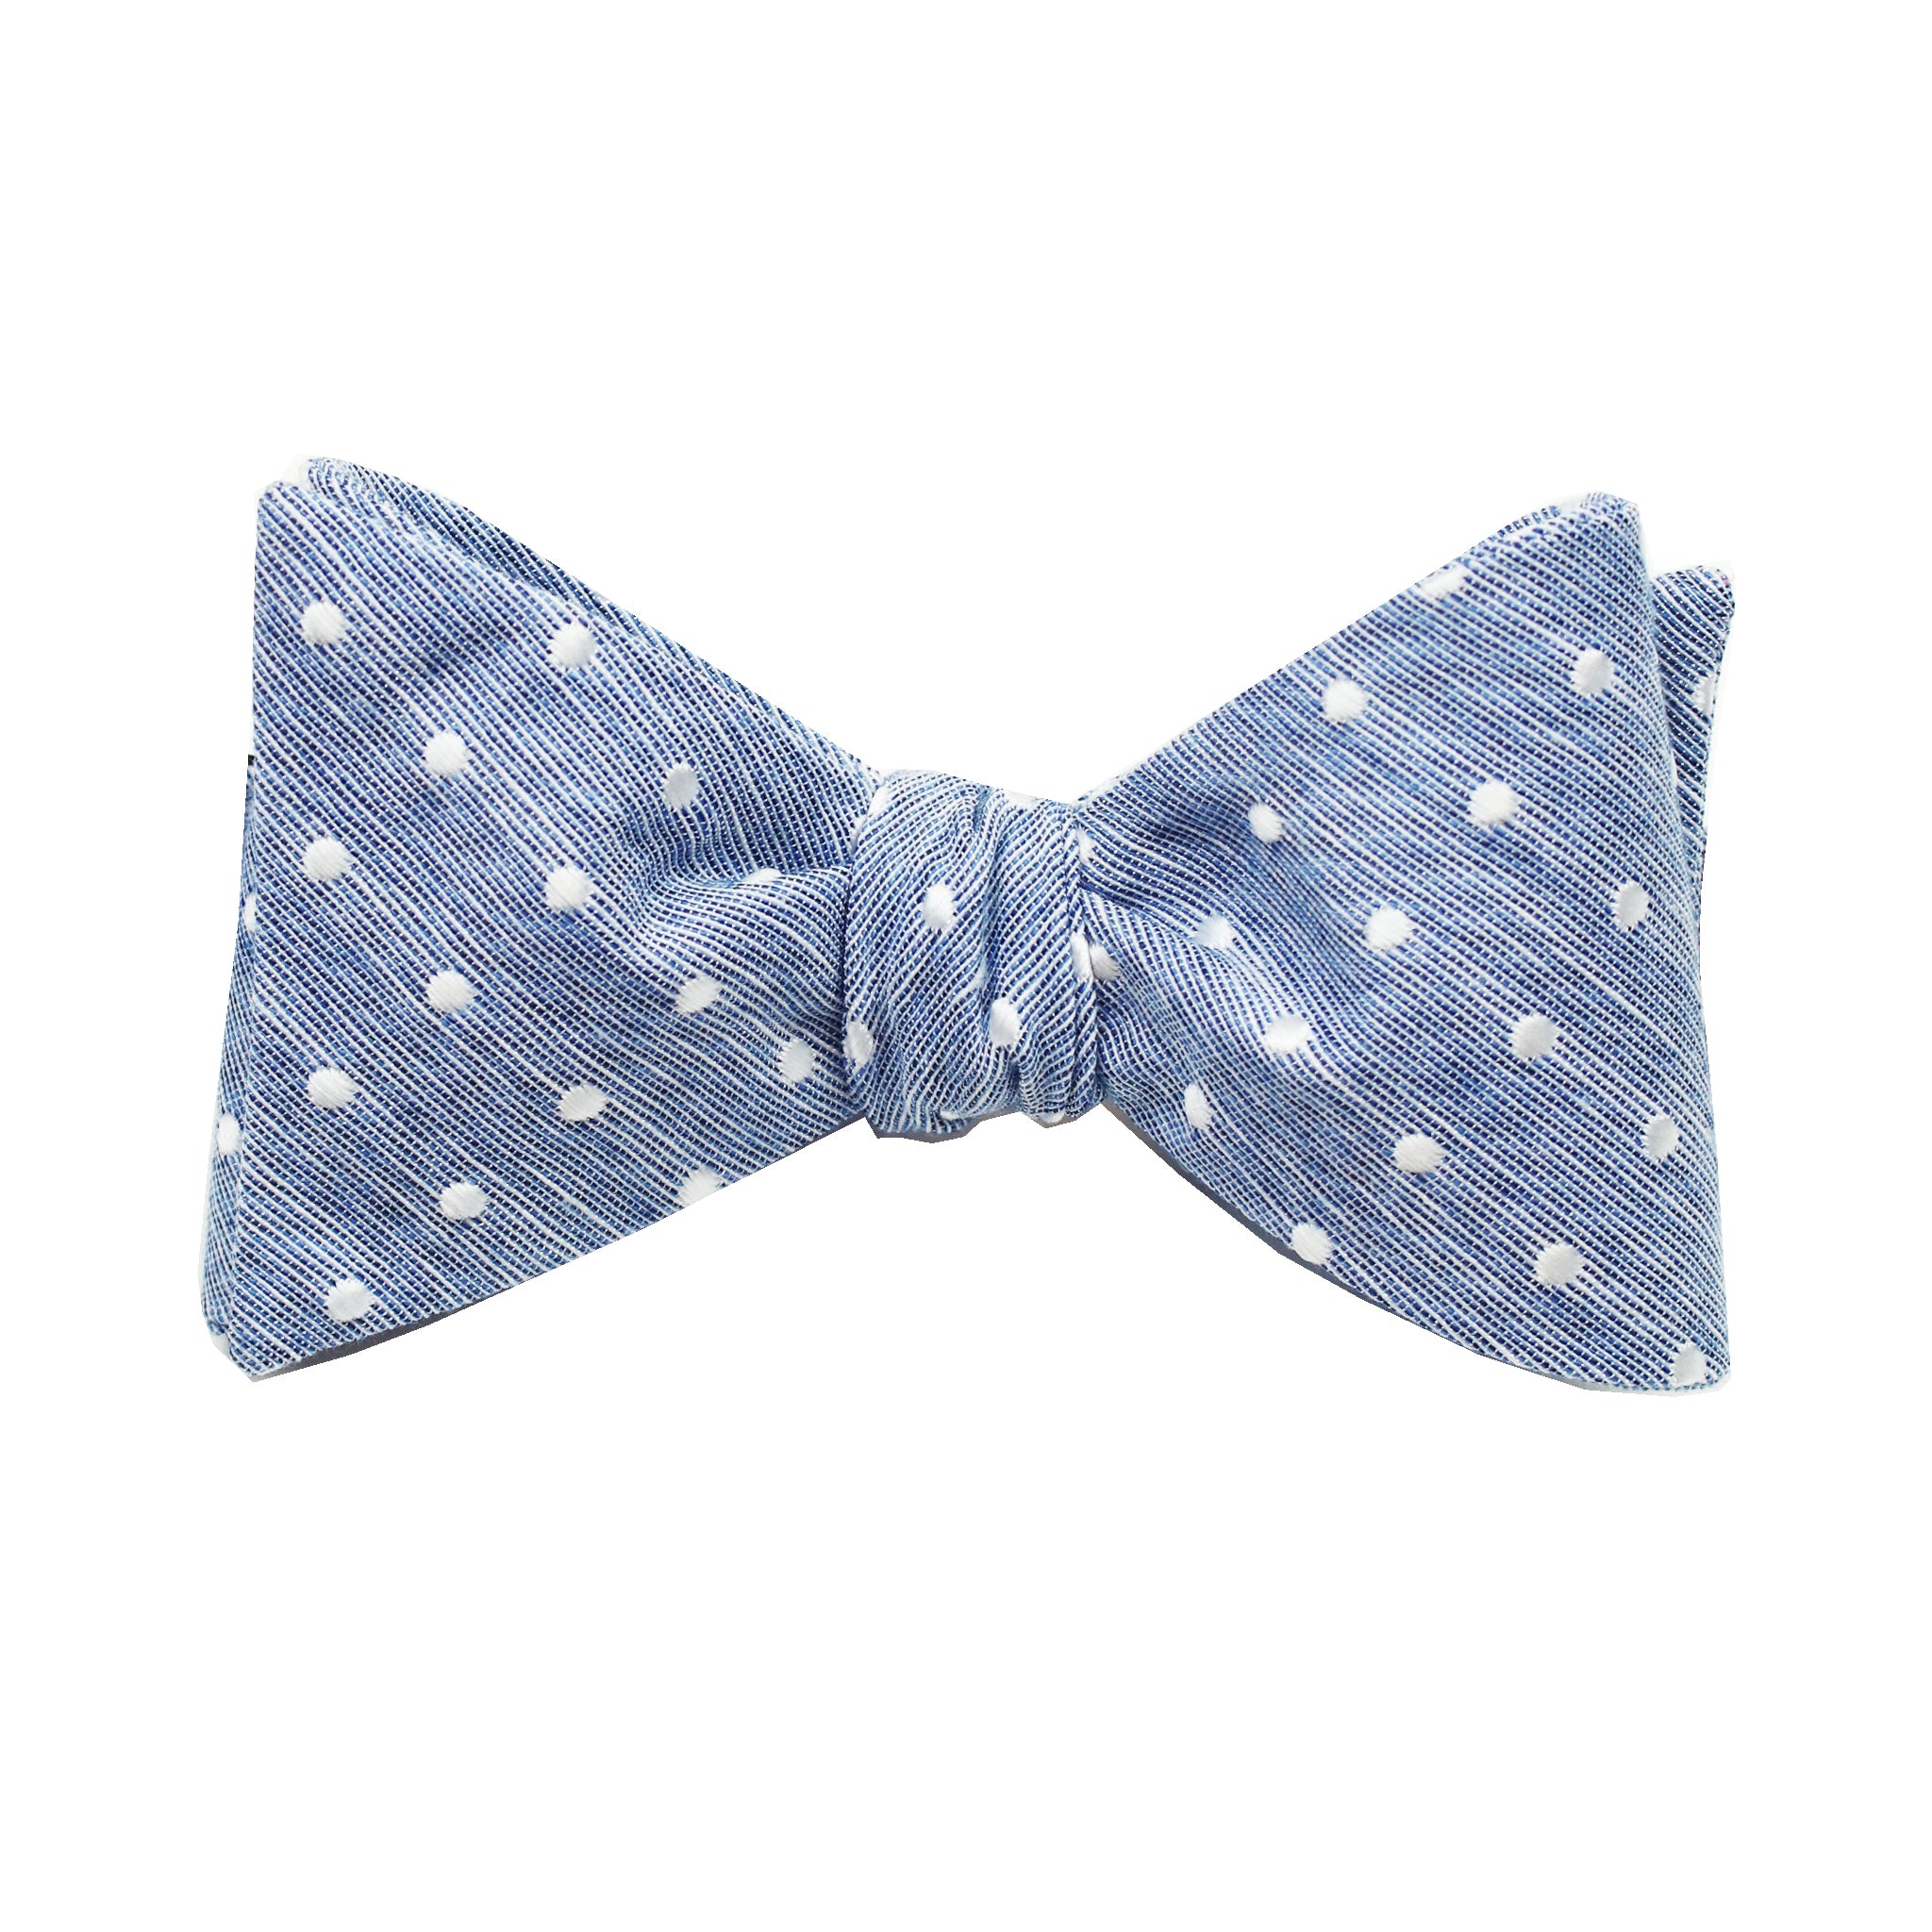 Blue & White Polkadot Self Tie Bow Tie